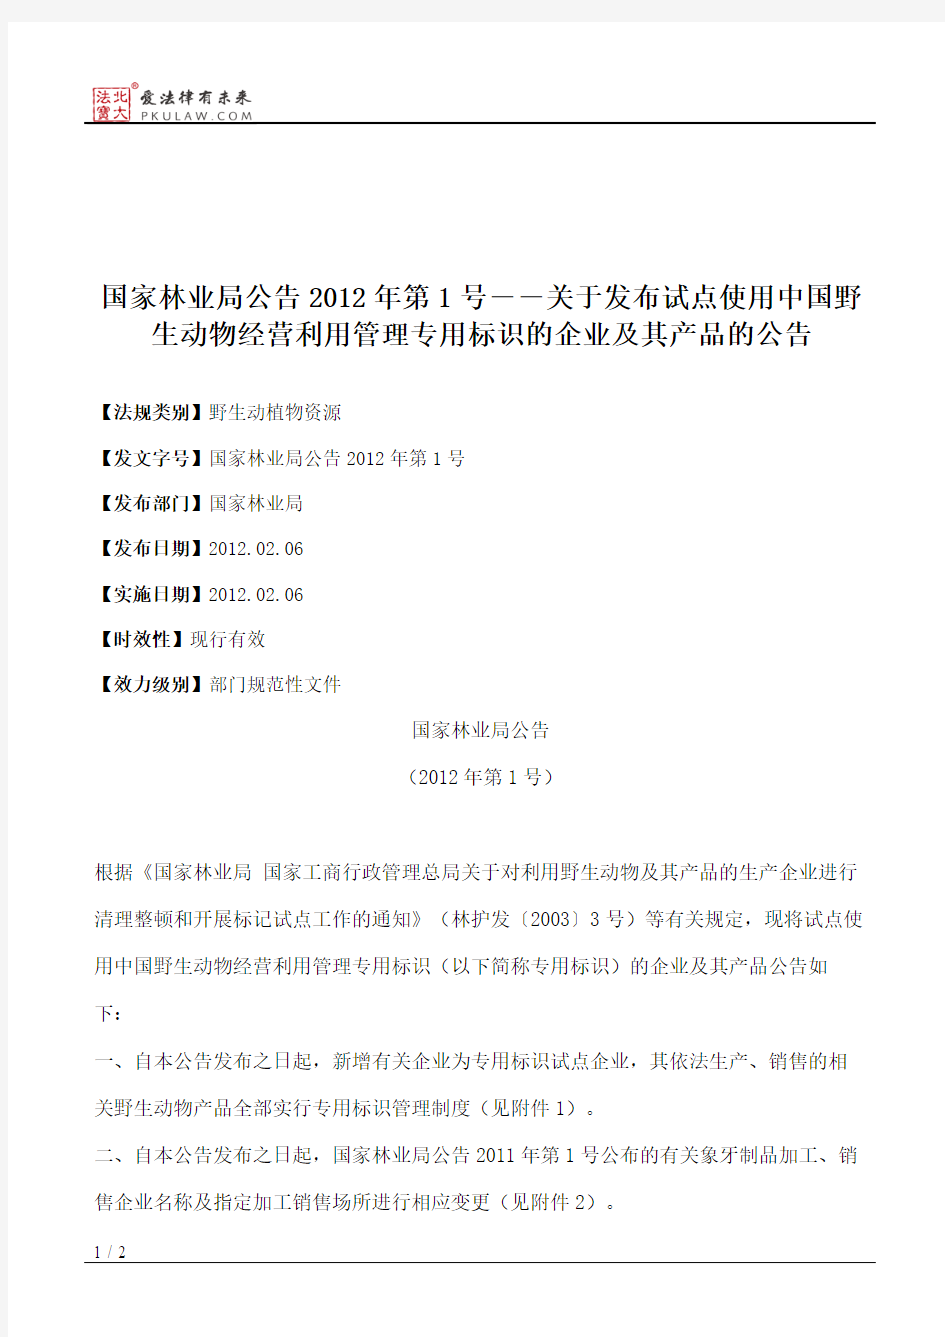 国家林业局公告2012年第1号――关于发布试点使用中国野生动物经营